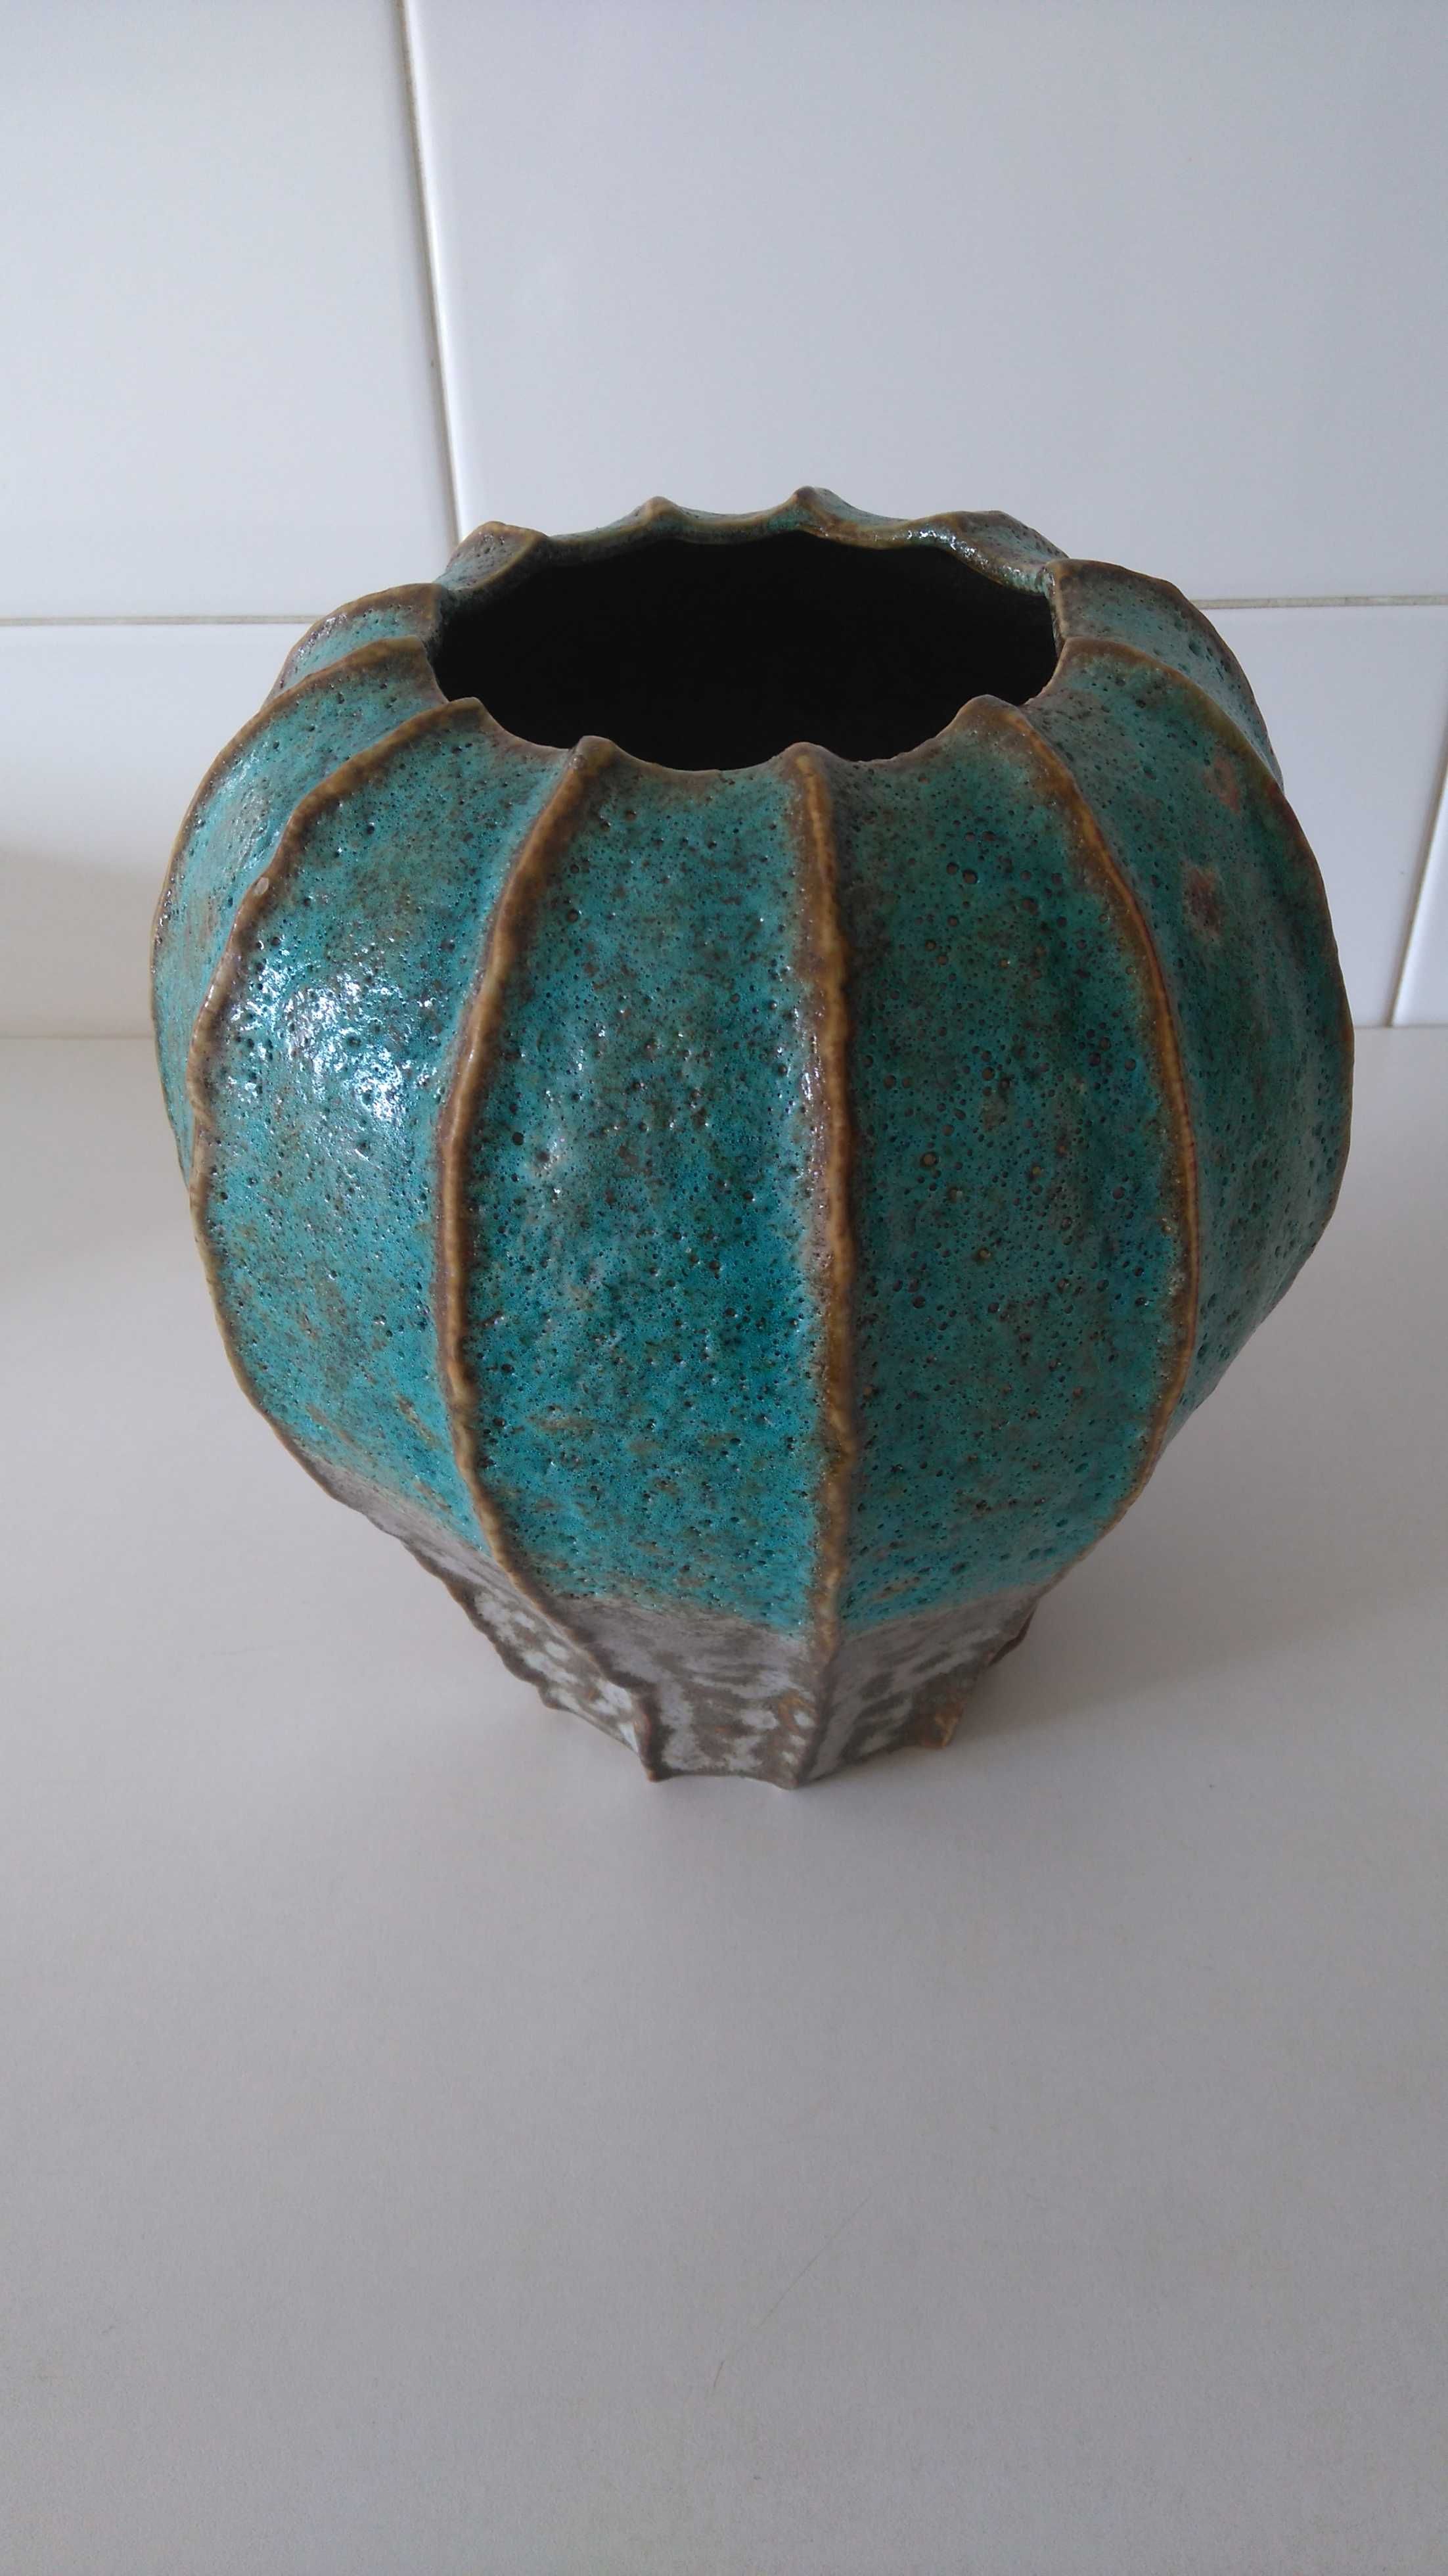 Vaso cerâmica decoração 25cm LAREDOUTE NOVO